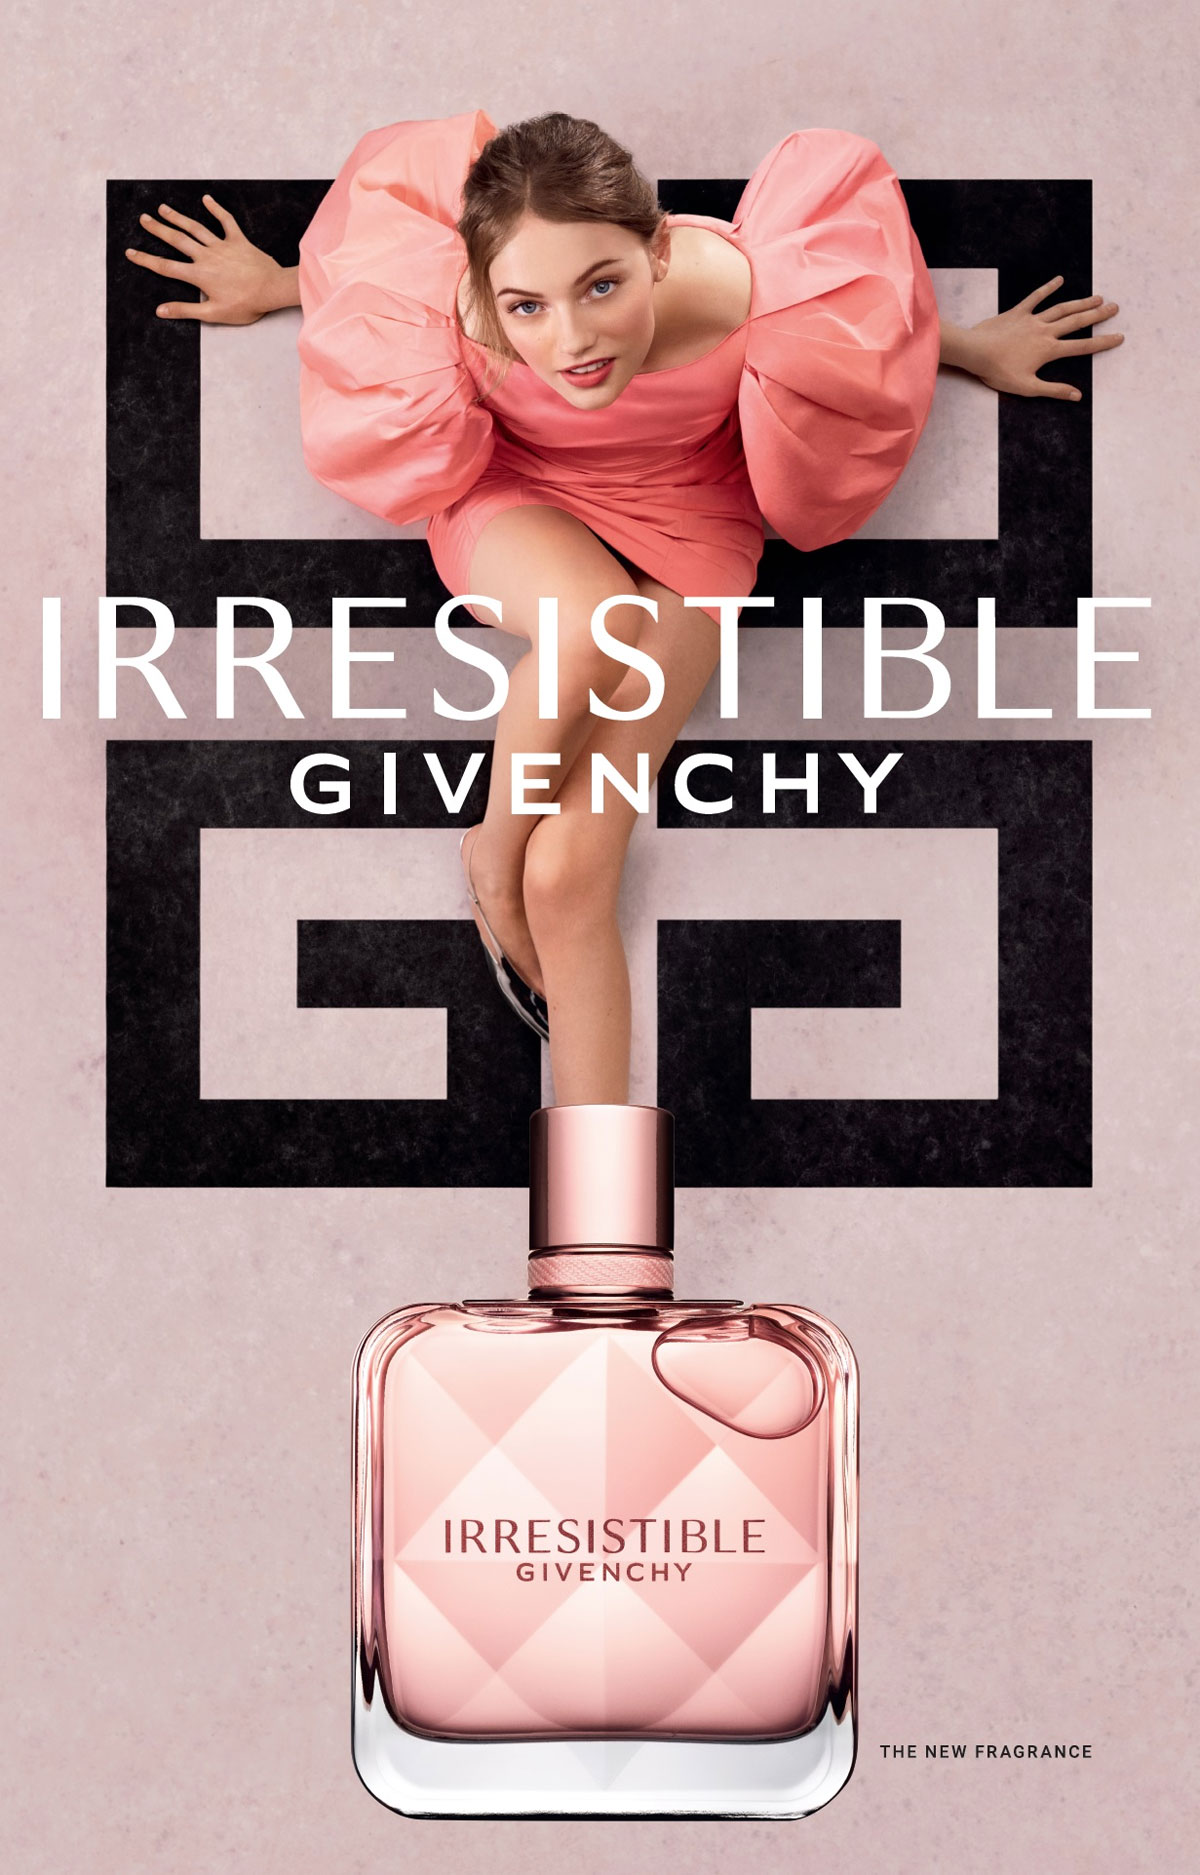 Givenchy Irresistible Givenchy Perfume Ad